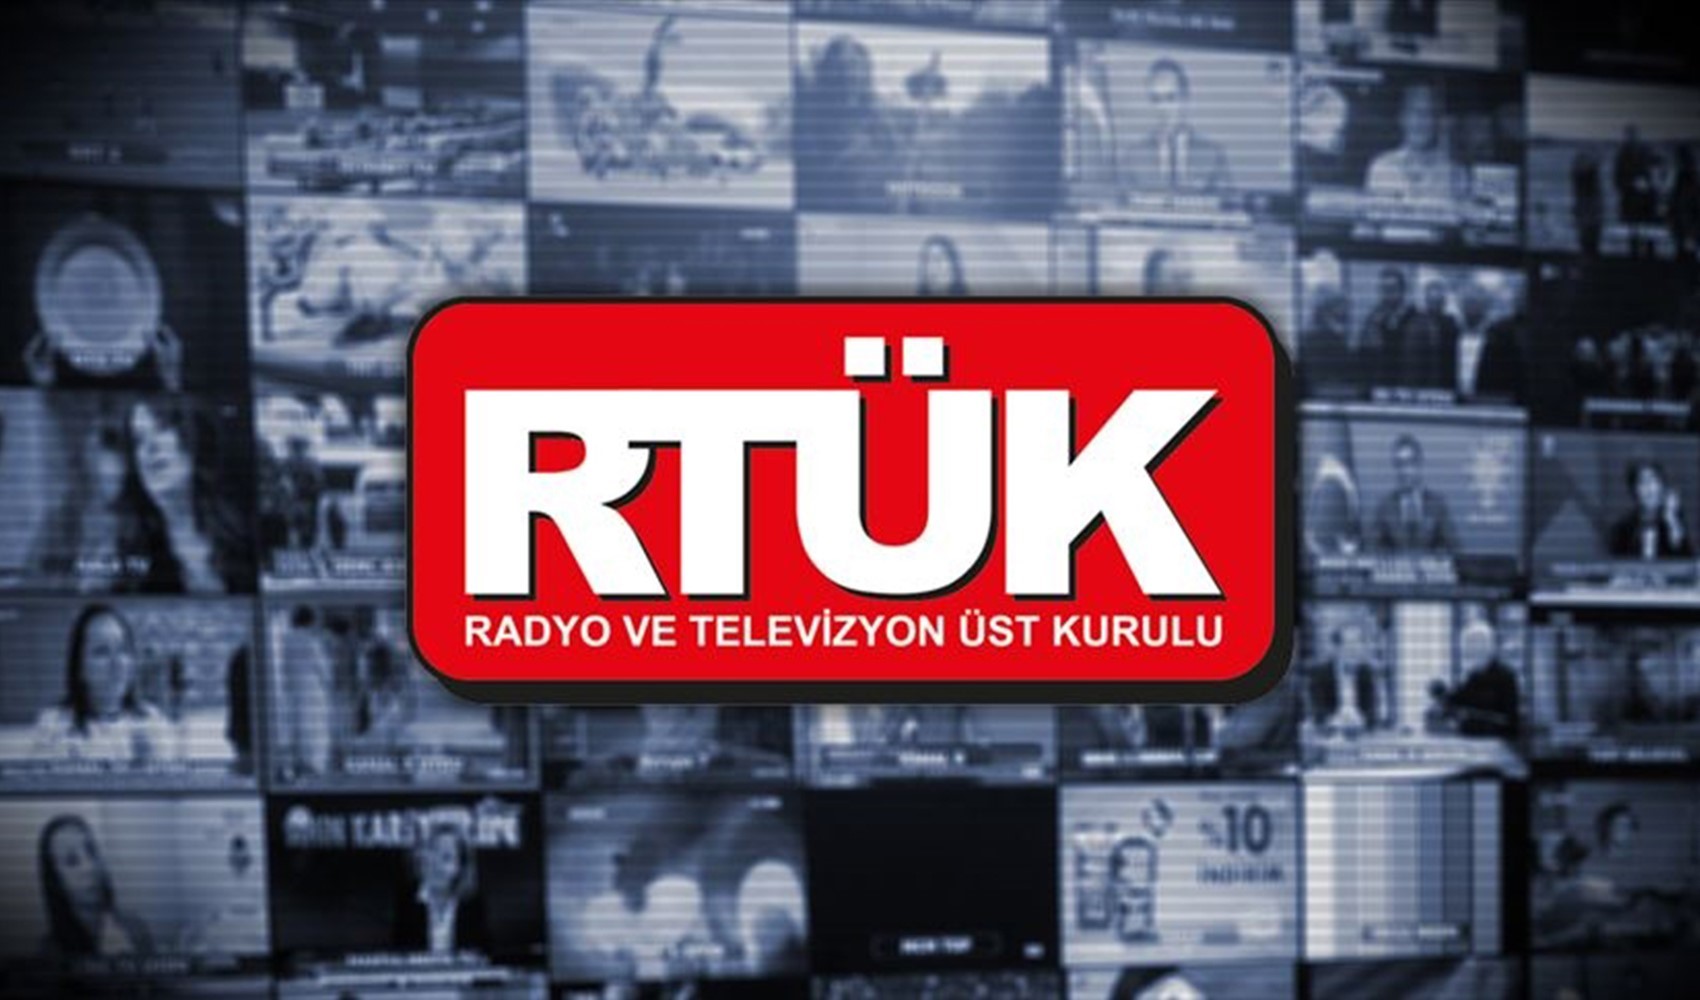 Bütün gün AKP'li adayların reklam filmi yayınlanmıştı: RTÜK, TRT Haber'e ceza verecek mi?